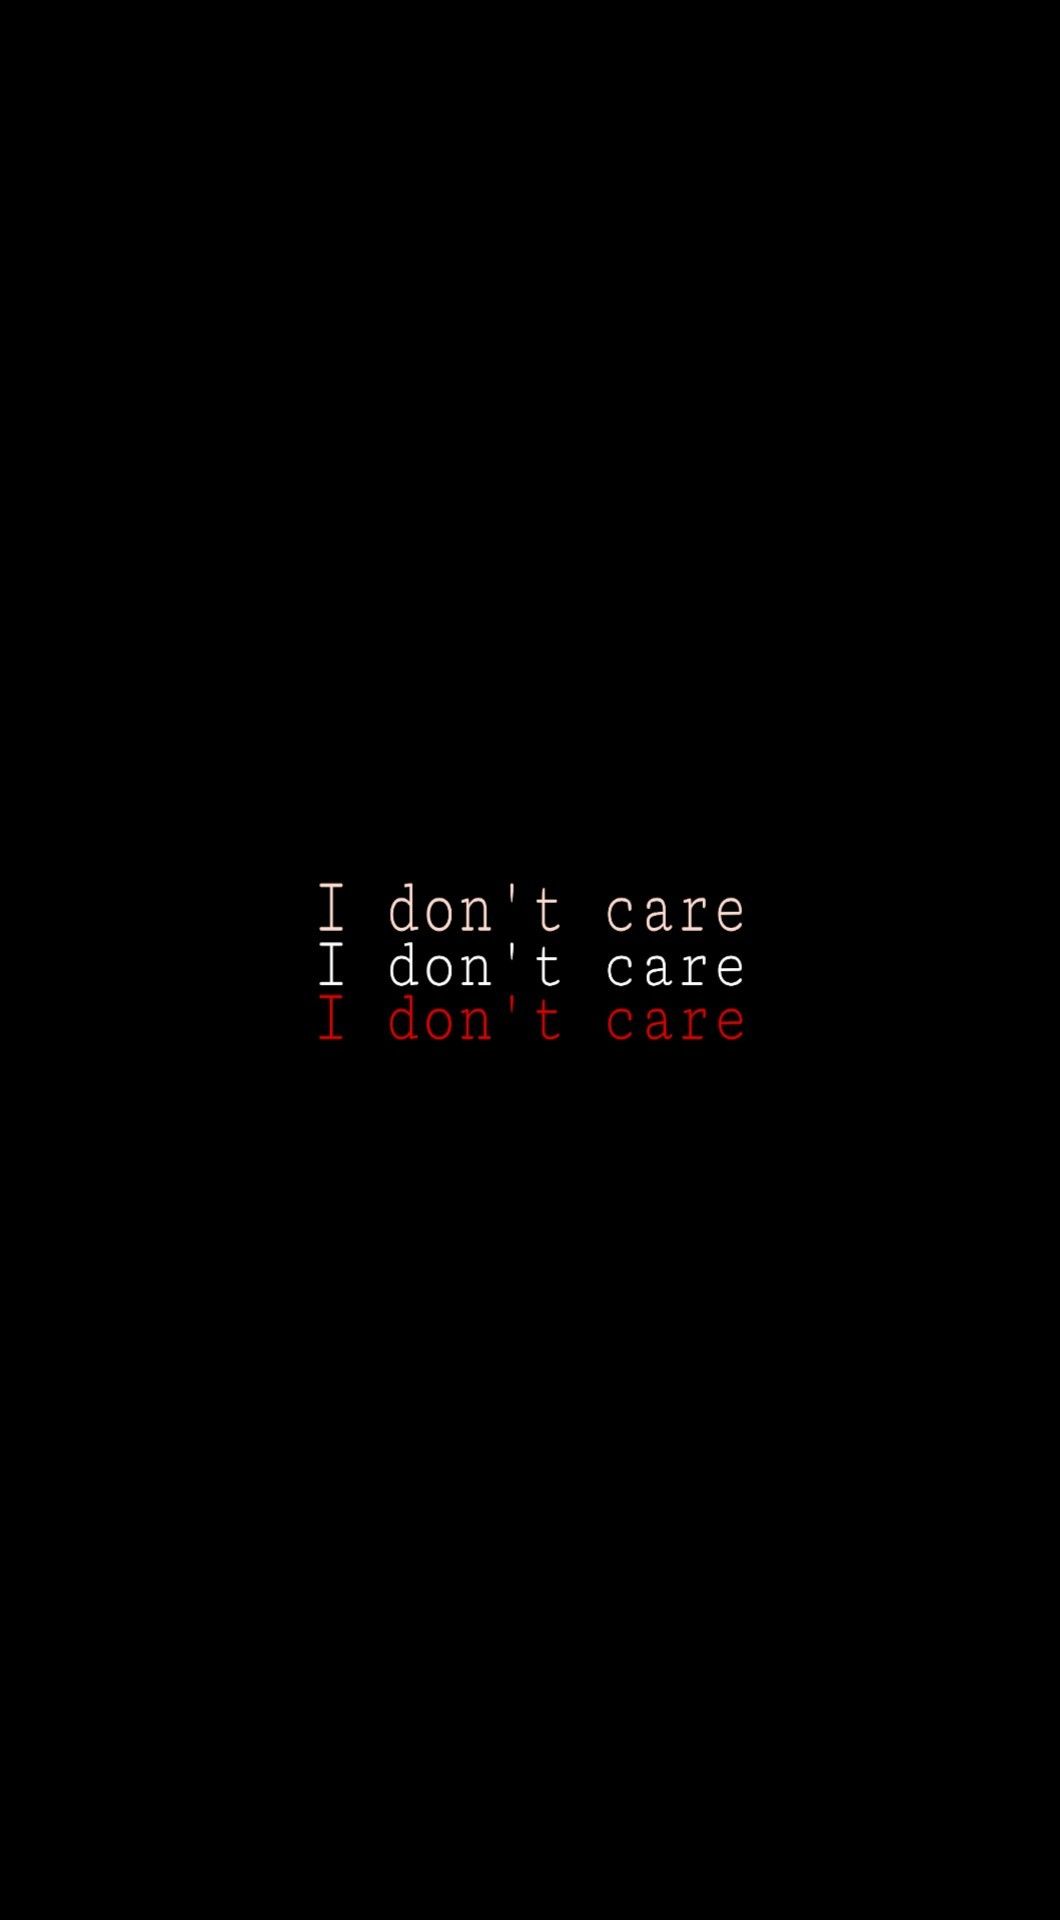 I don't care. Don't care quotes, I dont care quotes, Black aesthetic wallpaper